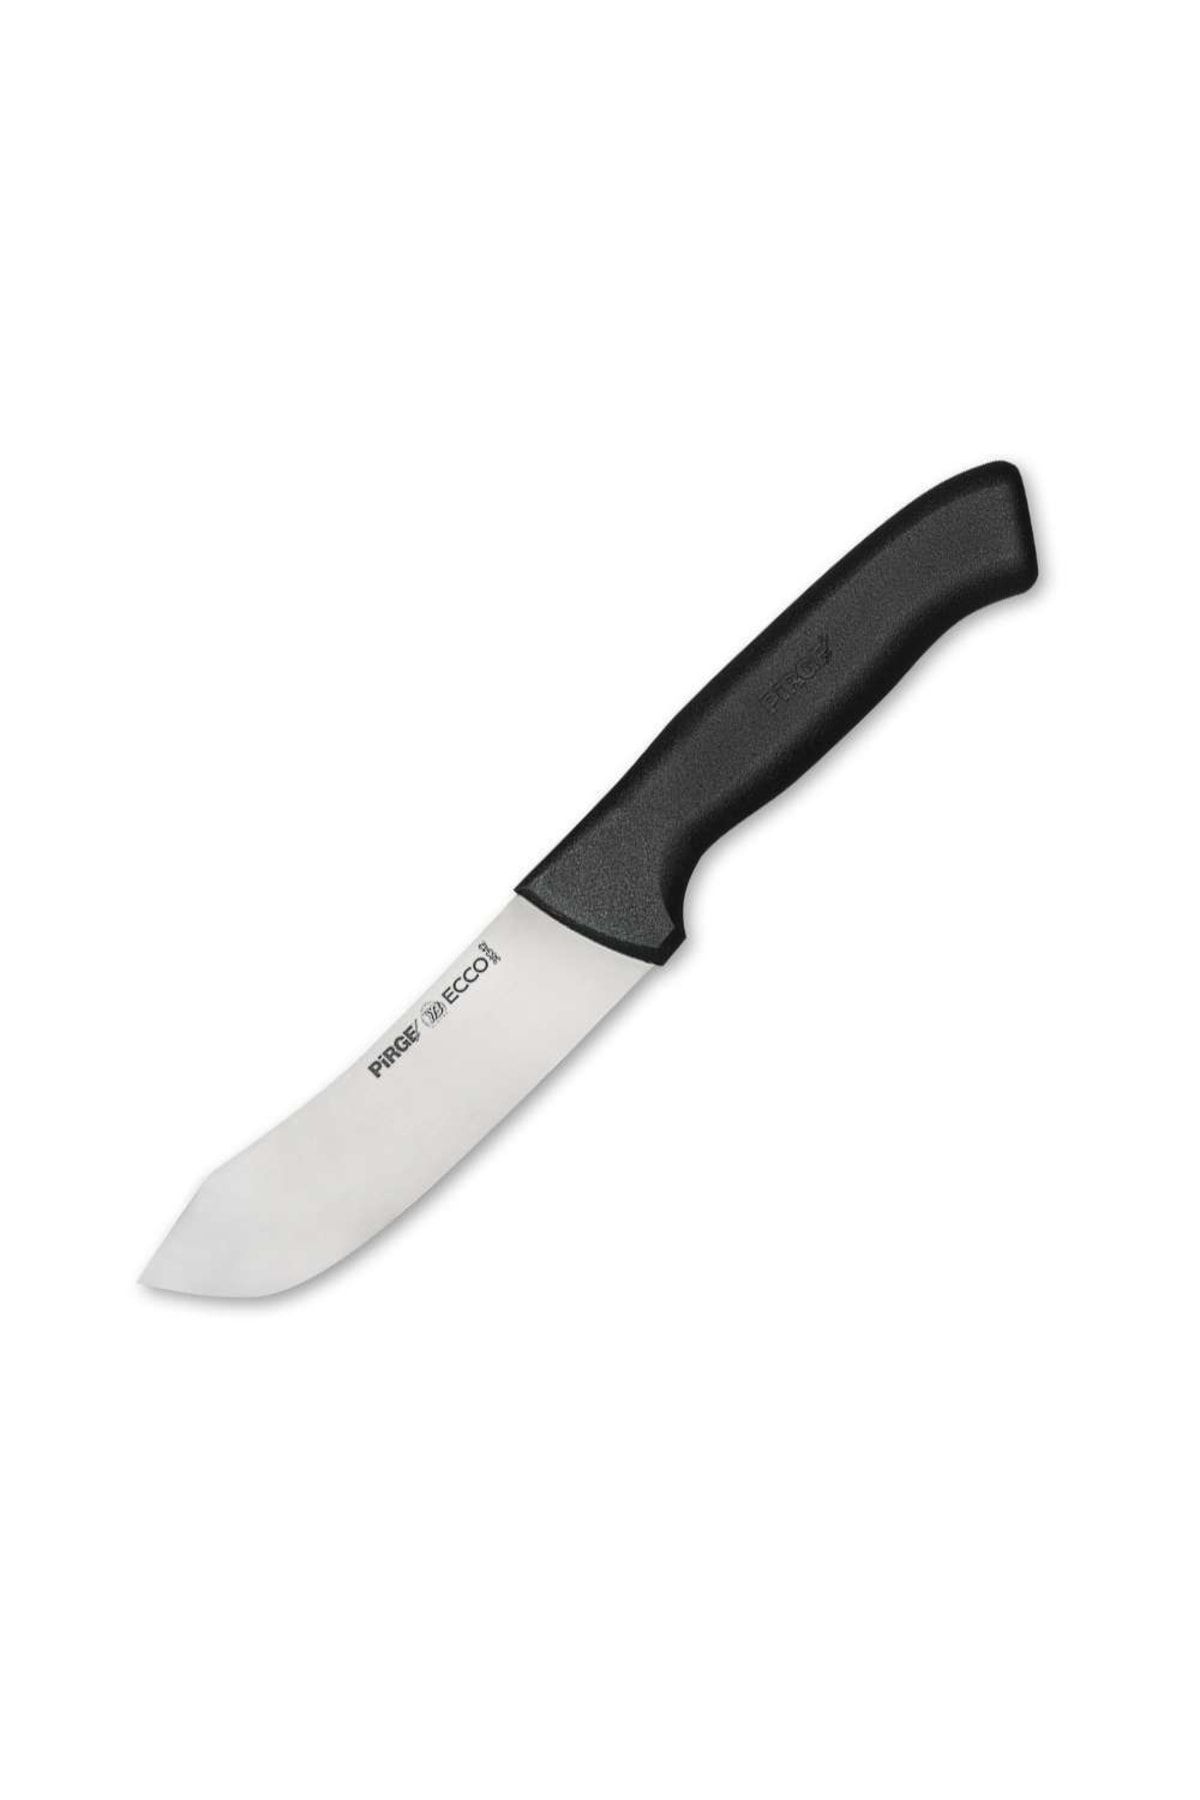 Pirge Ecco Balık Temizleme Bıçağı 12 cm 38342